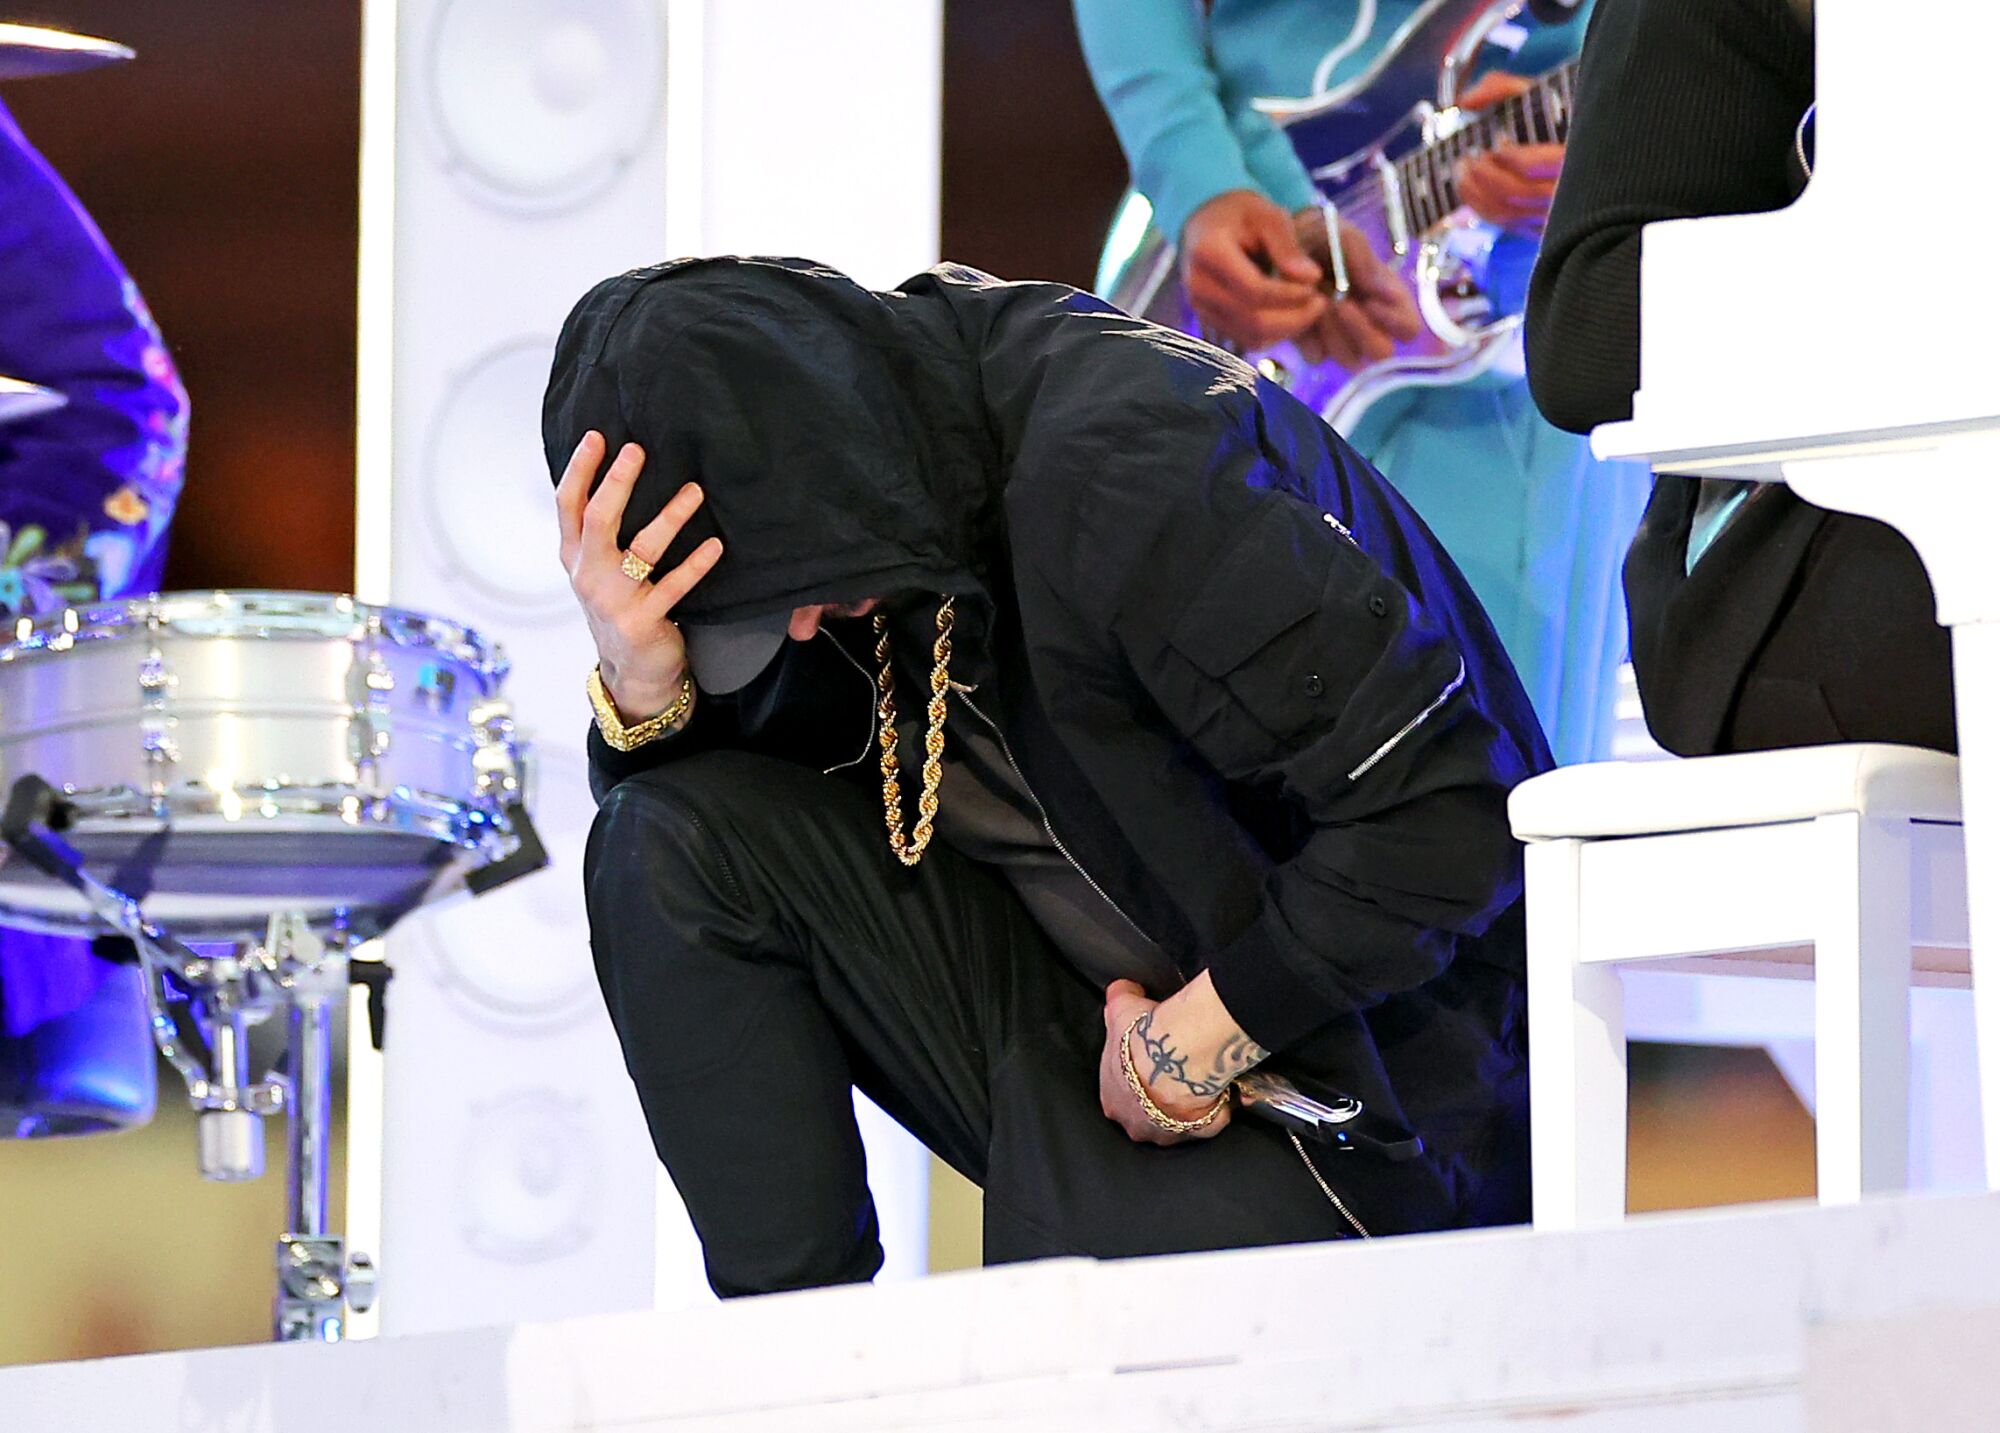 A man in a black hoodie and black pants kneels onstage.